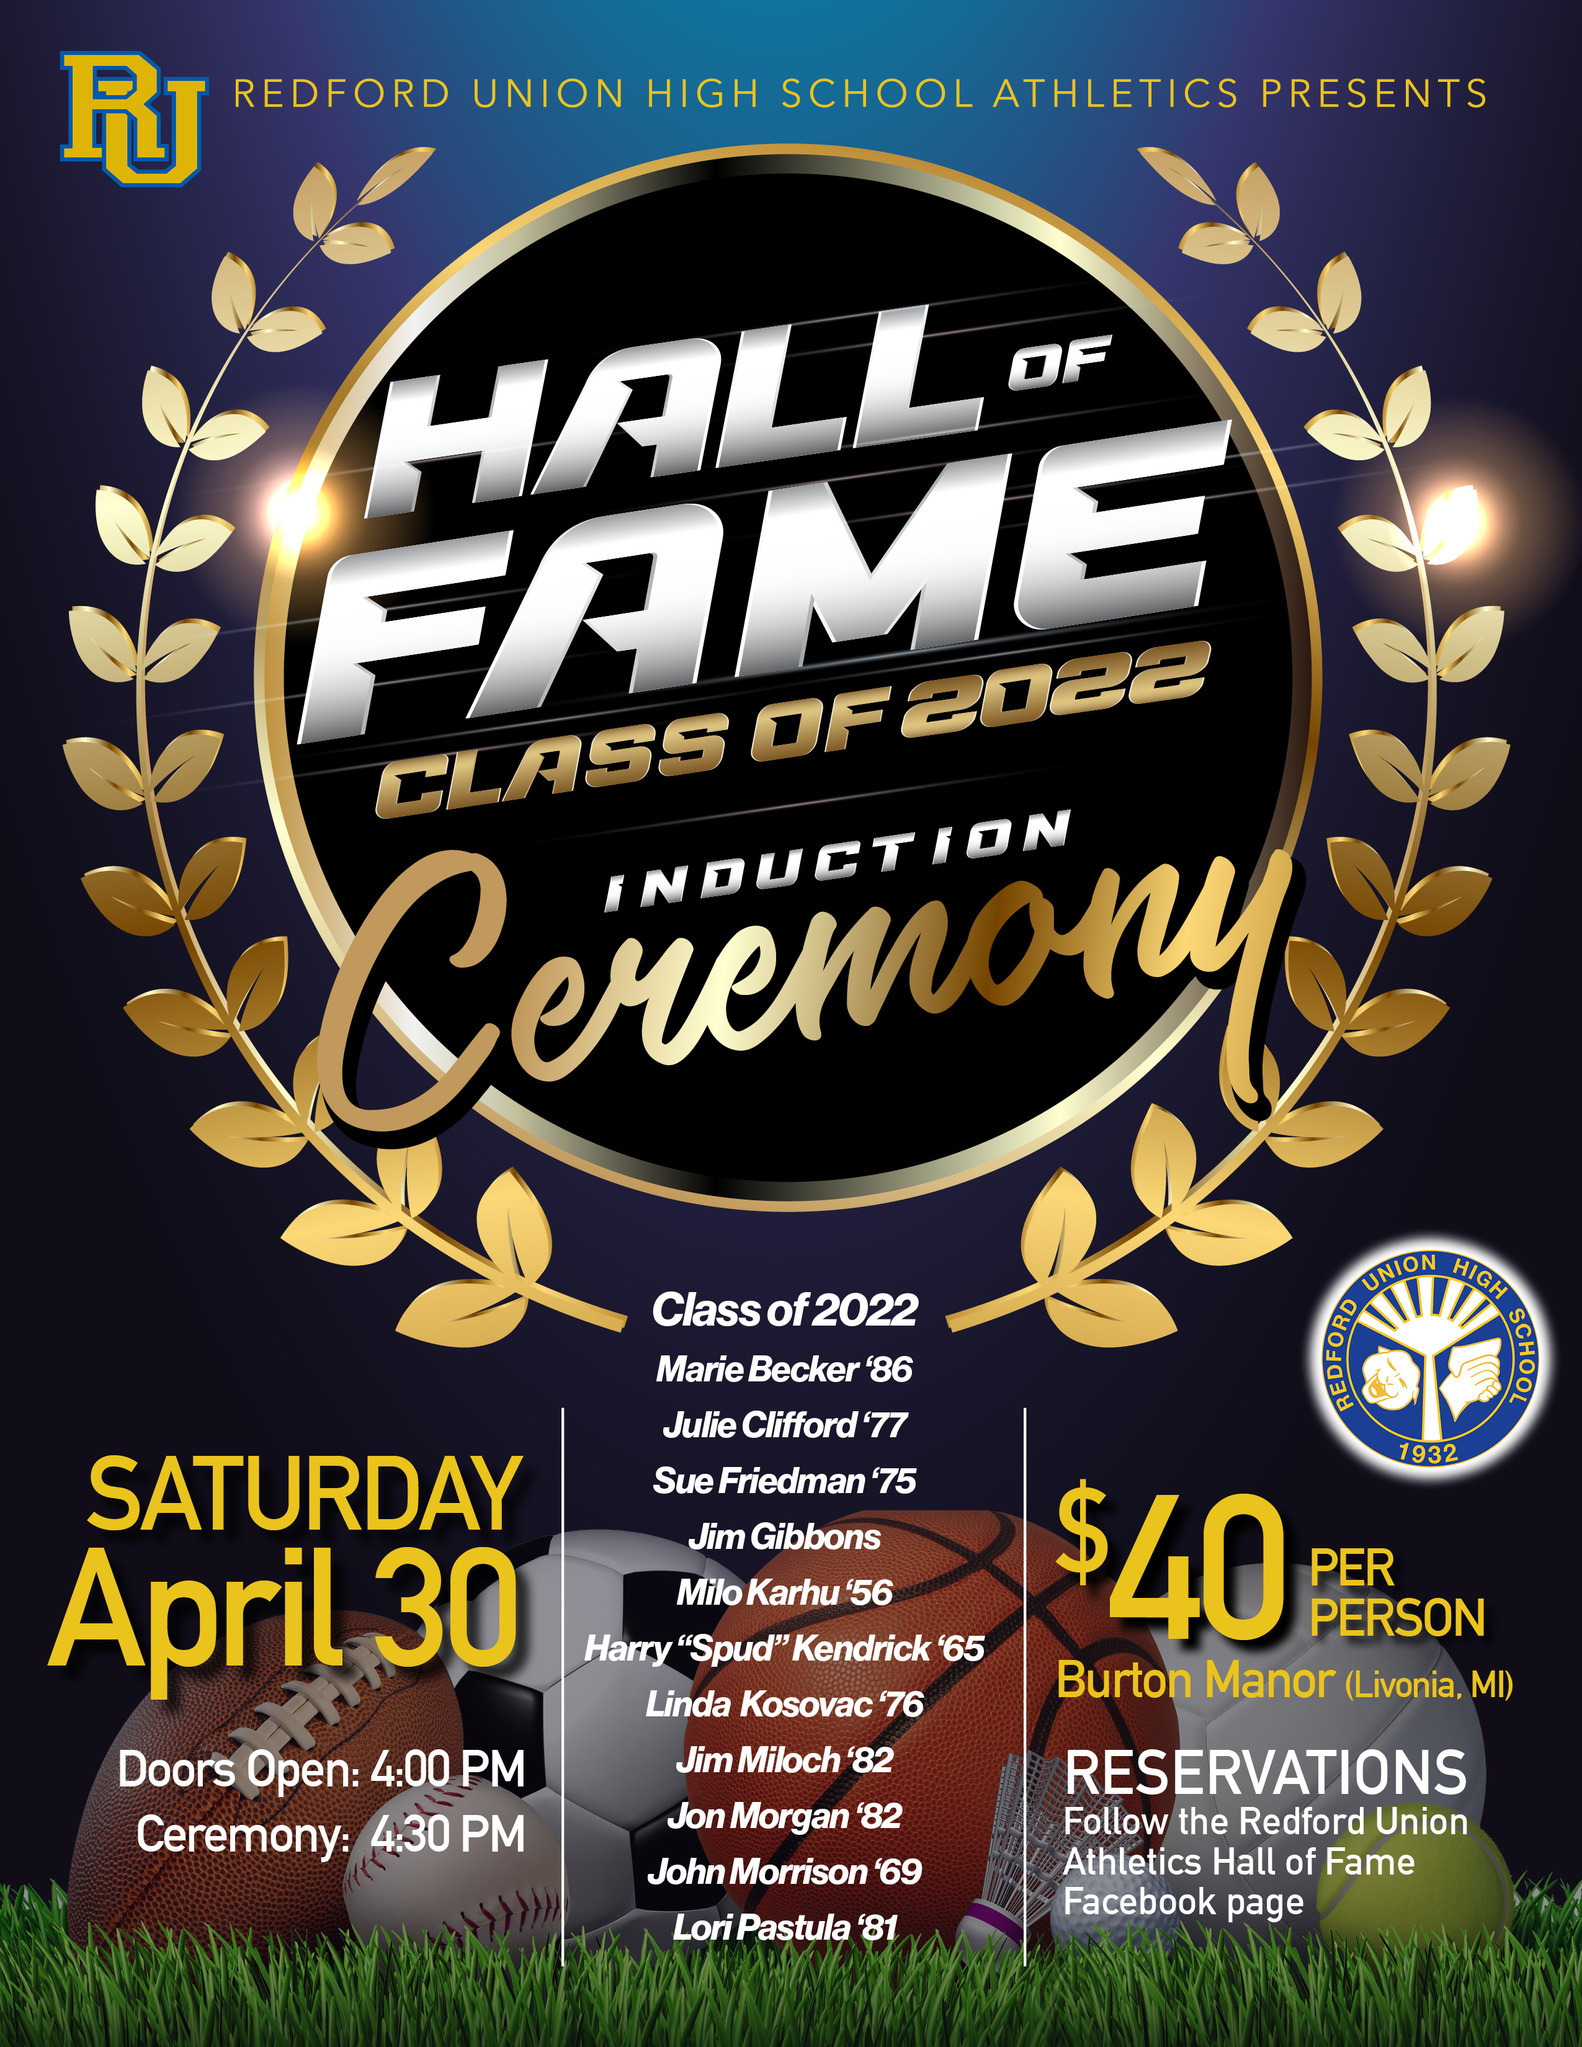 Class of 2022 Induction Ceremony Saturday, April 30, 2022 4PM. $40 per person. Burton Manor, Livonia, MI